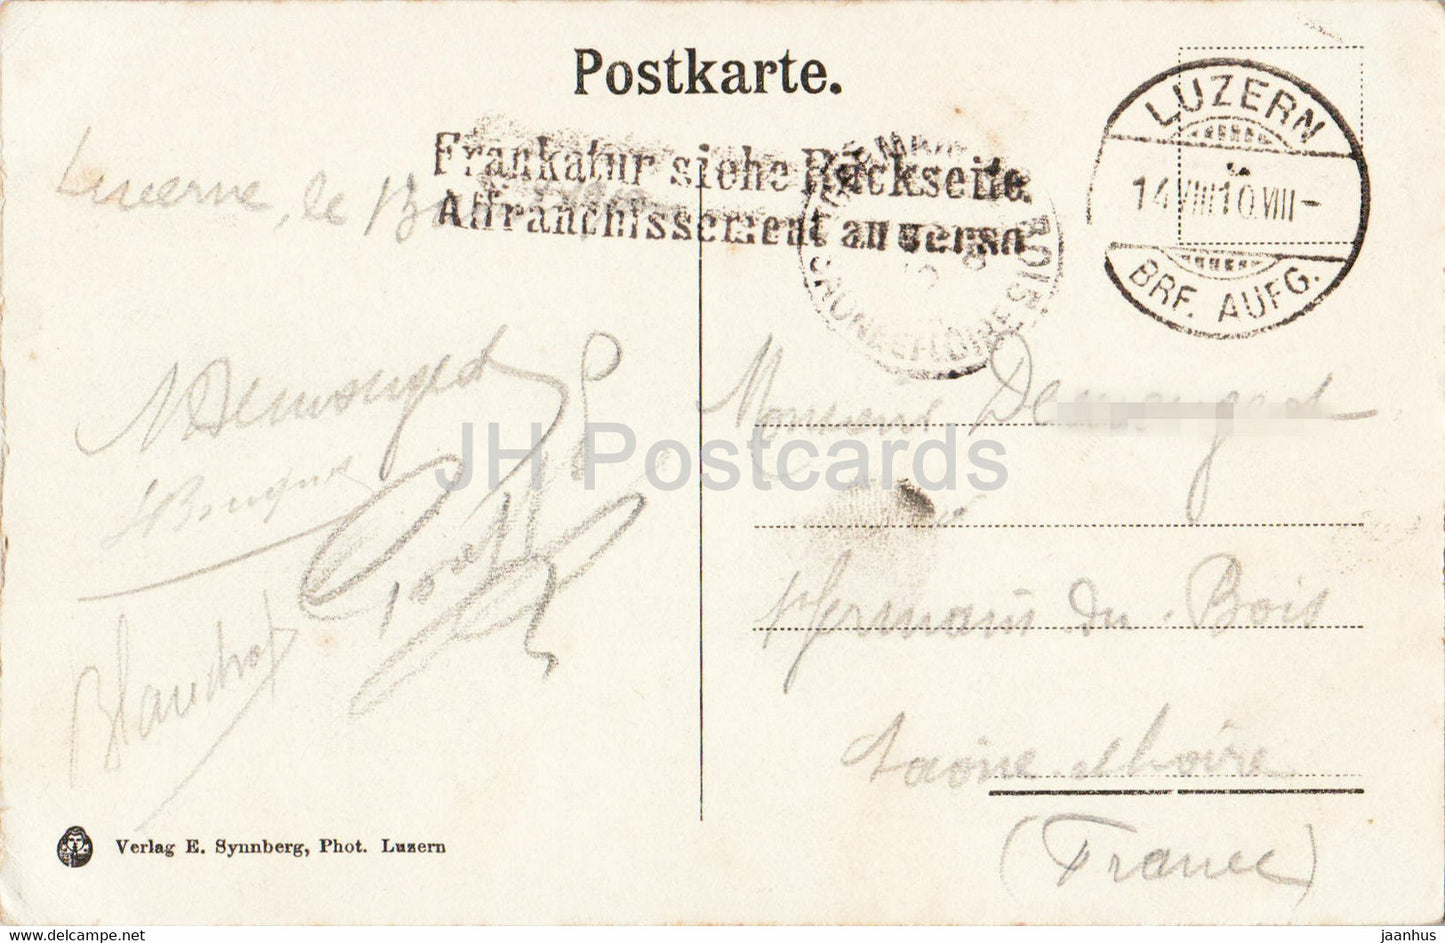 Luzern - Luzern - Schweizerhofquai - 619 - Straßenbahn - Boot - Dampfer - Schiff - alte Postkarte - 1910 - Schweiz - gebraucht